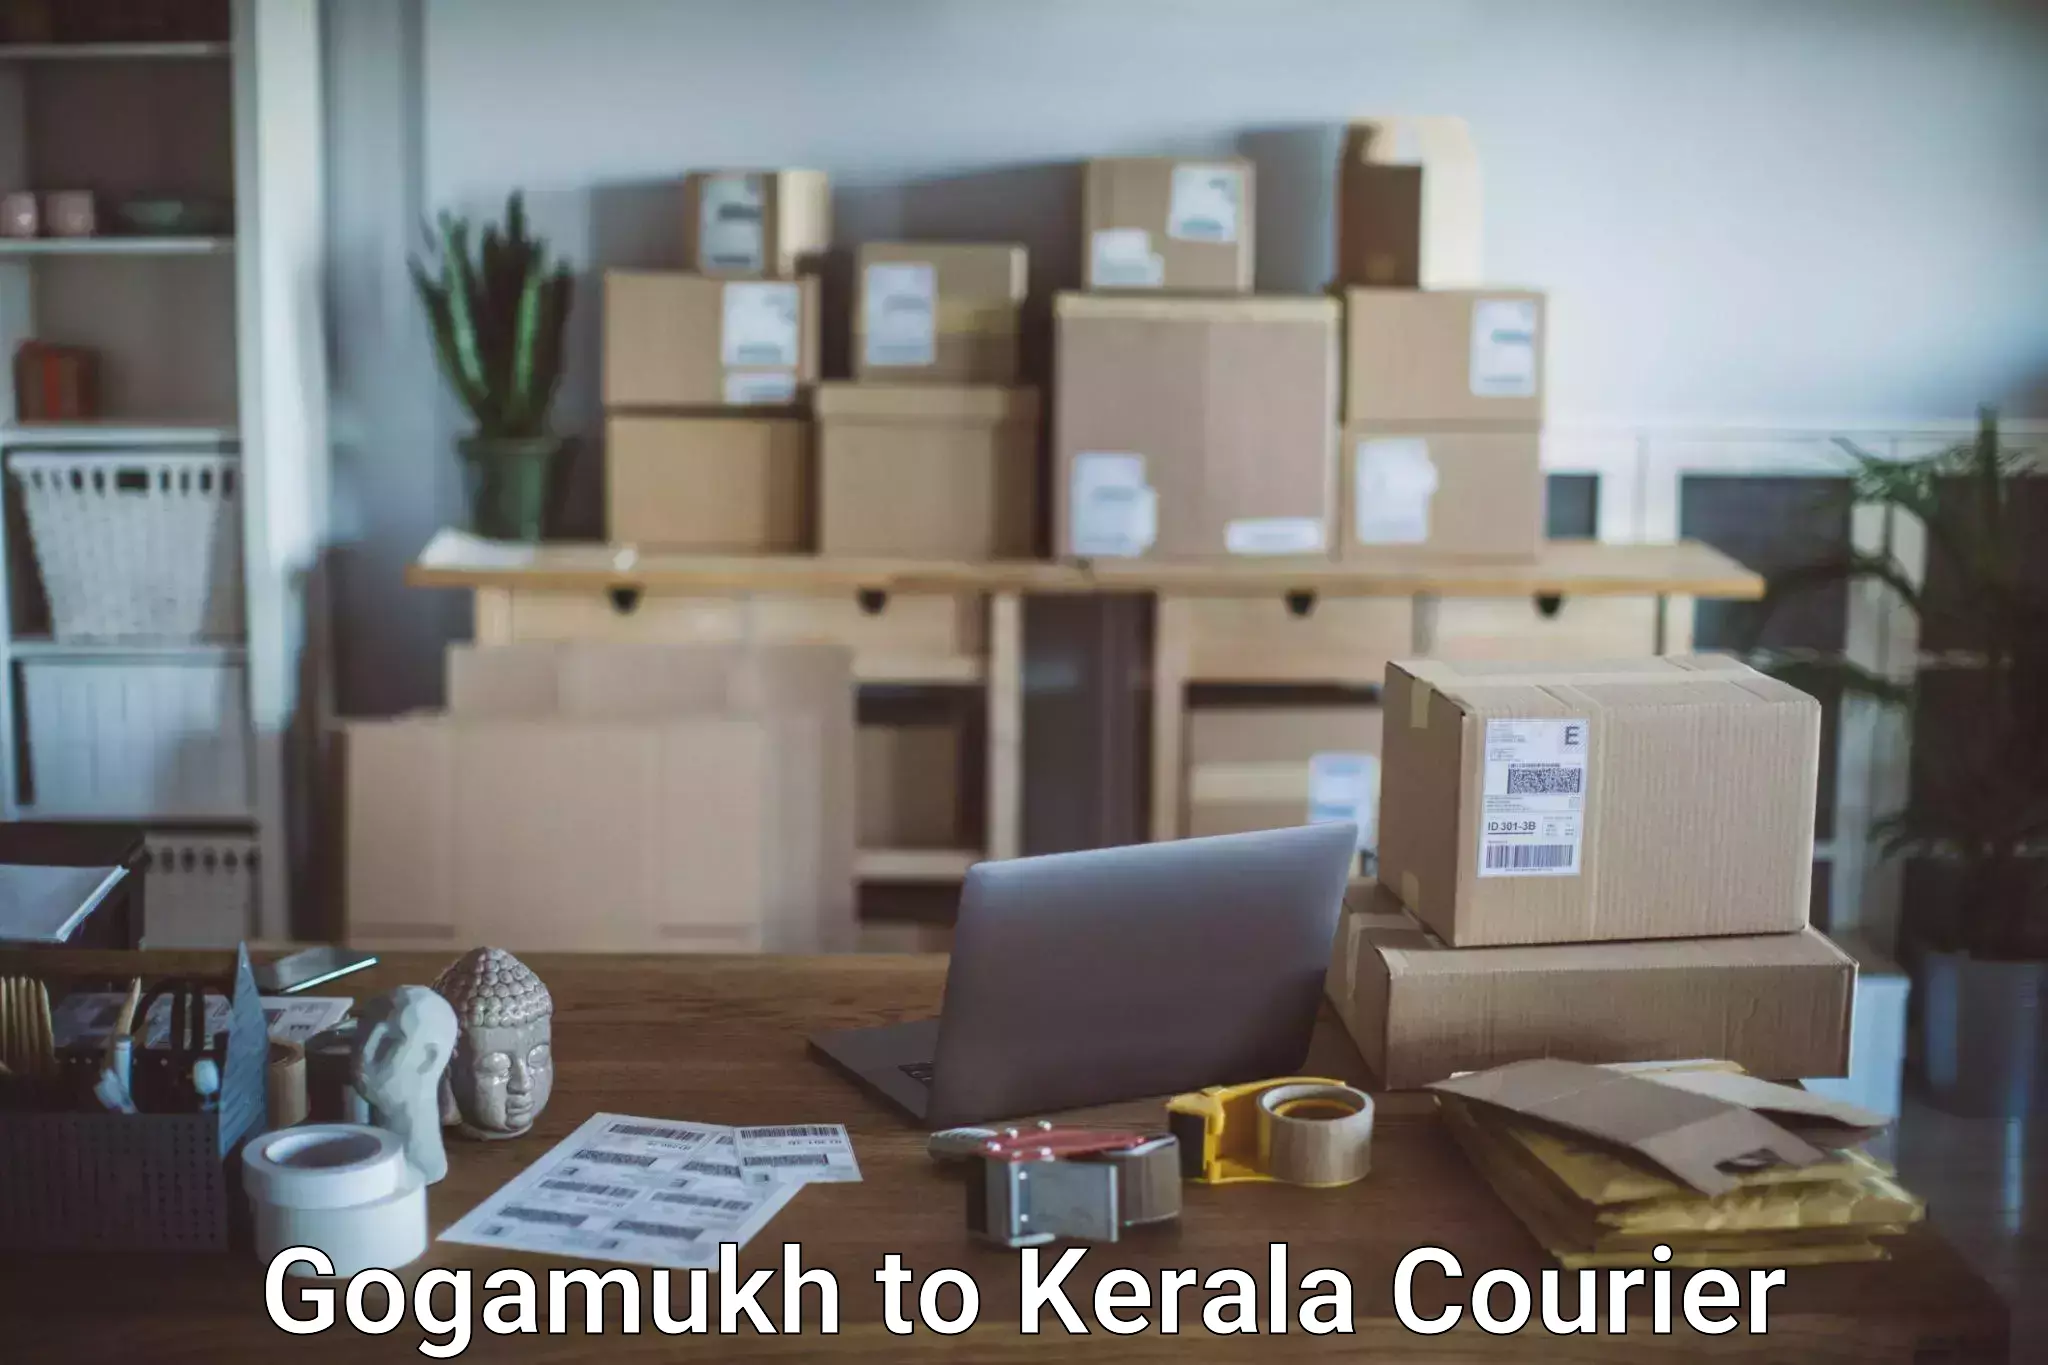 Luggage dispatch service Gogamukh to Kozhikode